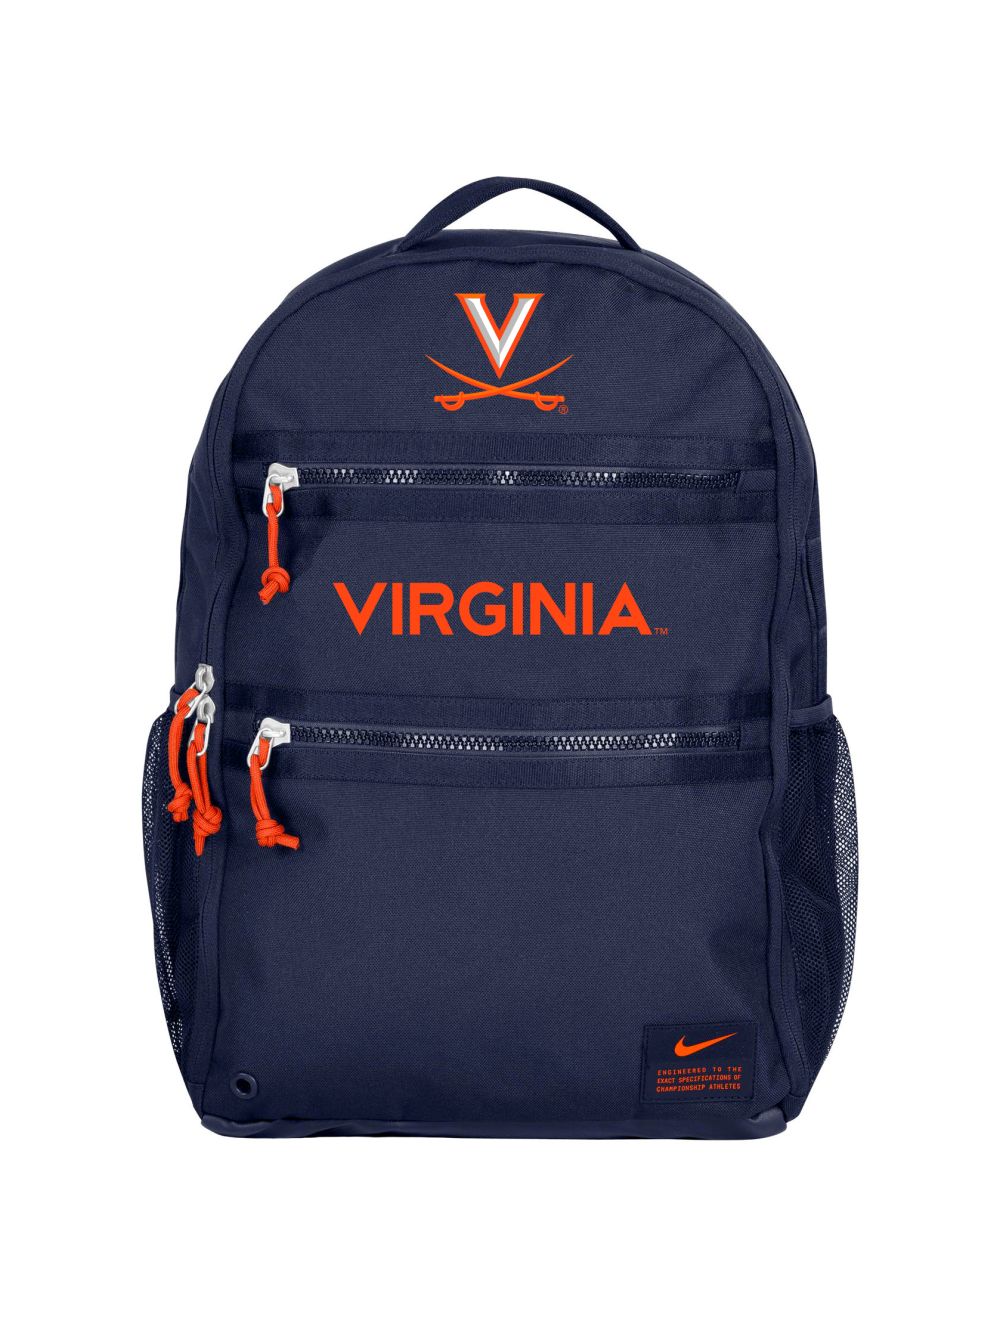 Nike School Bag – Marooned